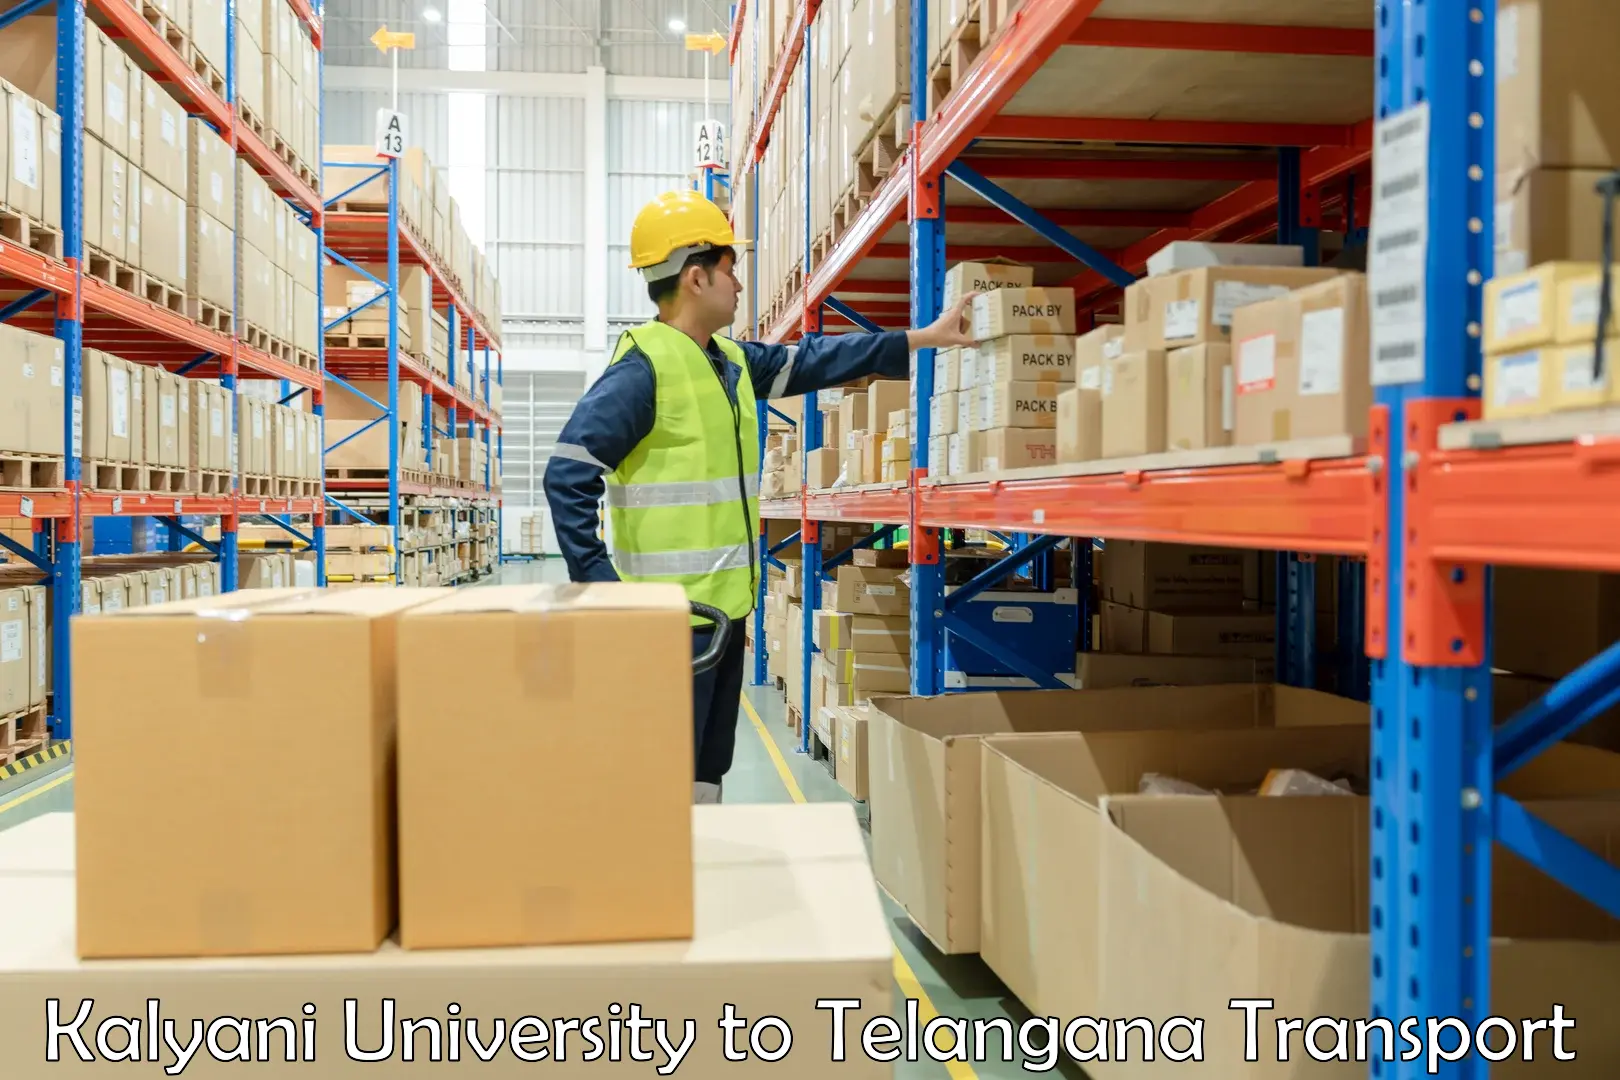 Lorry transport service Kalyani University to Eligedu